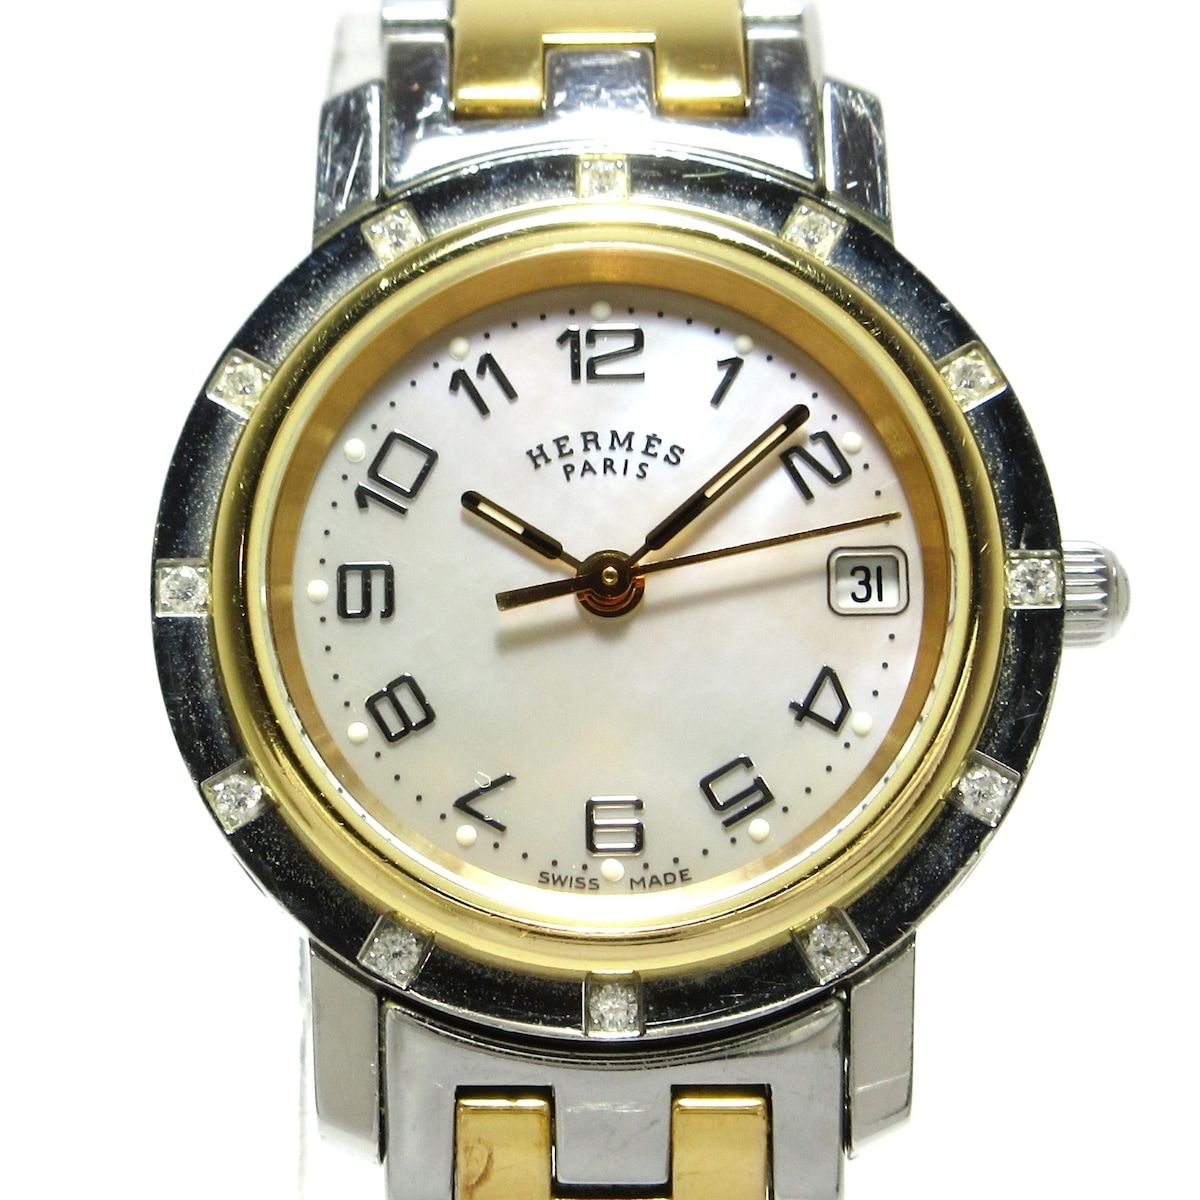 HERMES(エルメス) 腕時計 クリッパーナクレ CL4.222 レディース シェル 